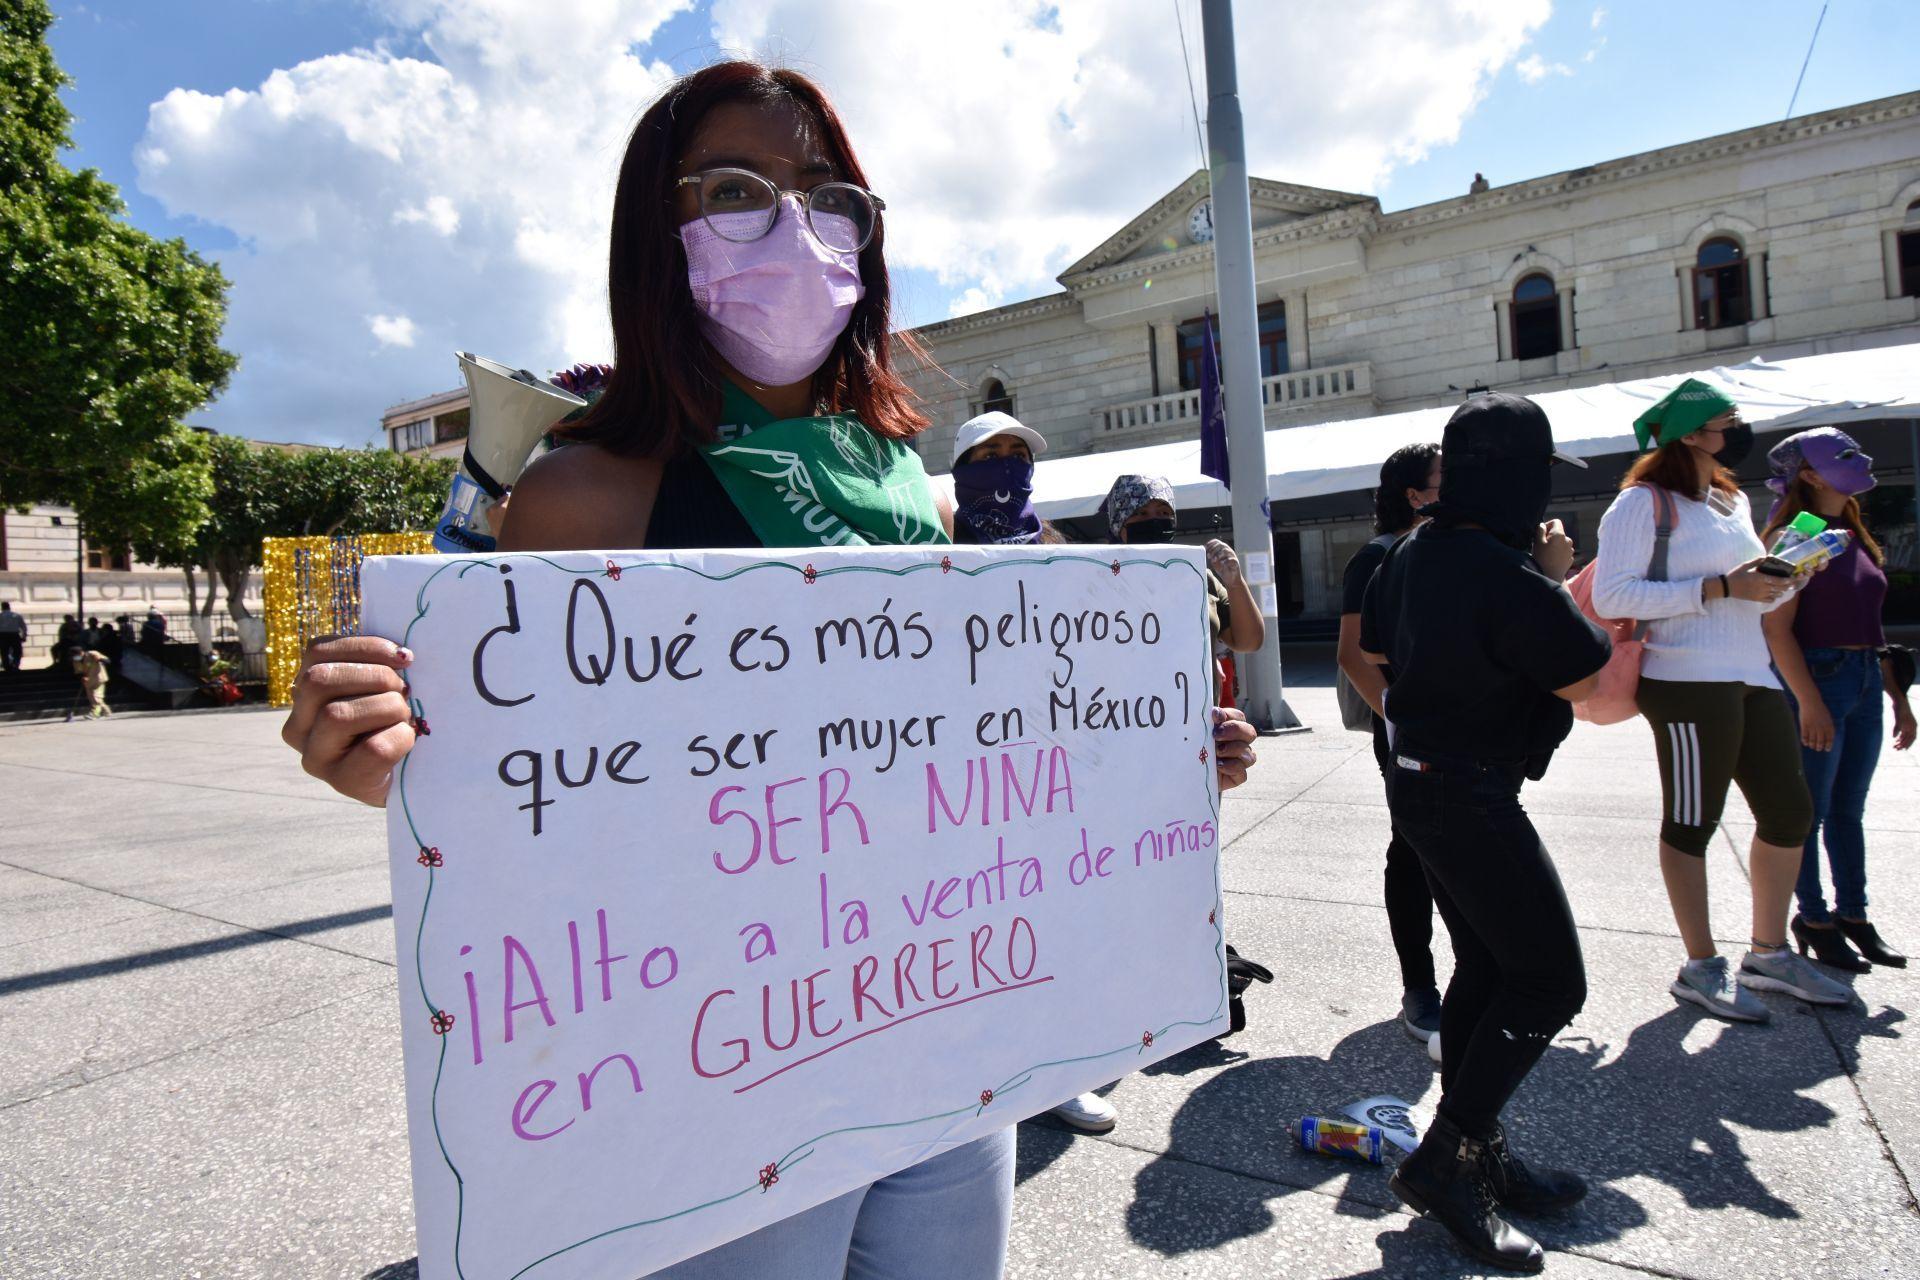 Monedas de cambio: venta de mujeres, la ‘tradición’ que no muere en Guerrero